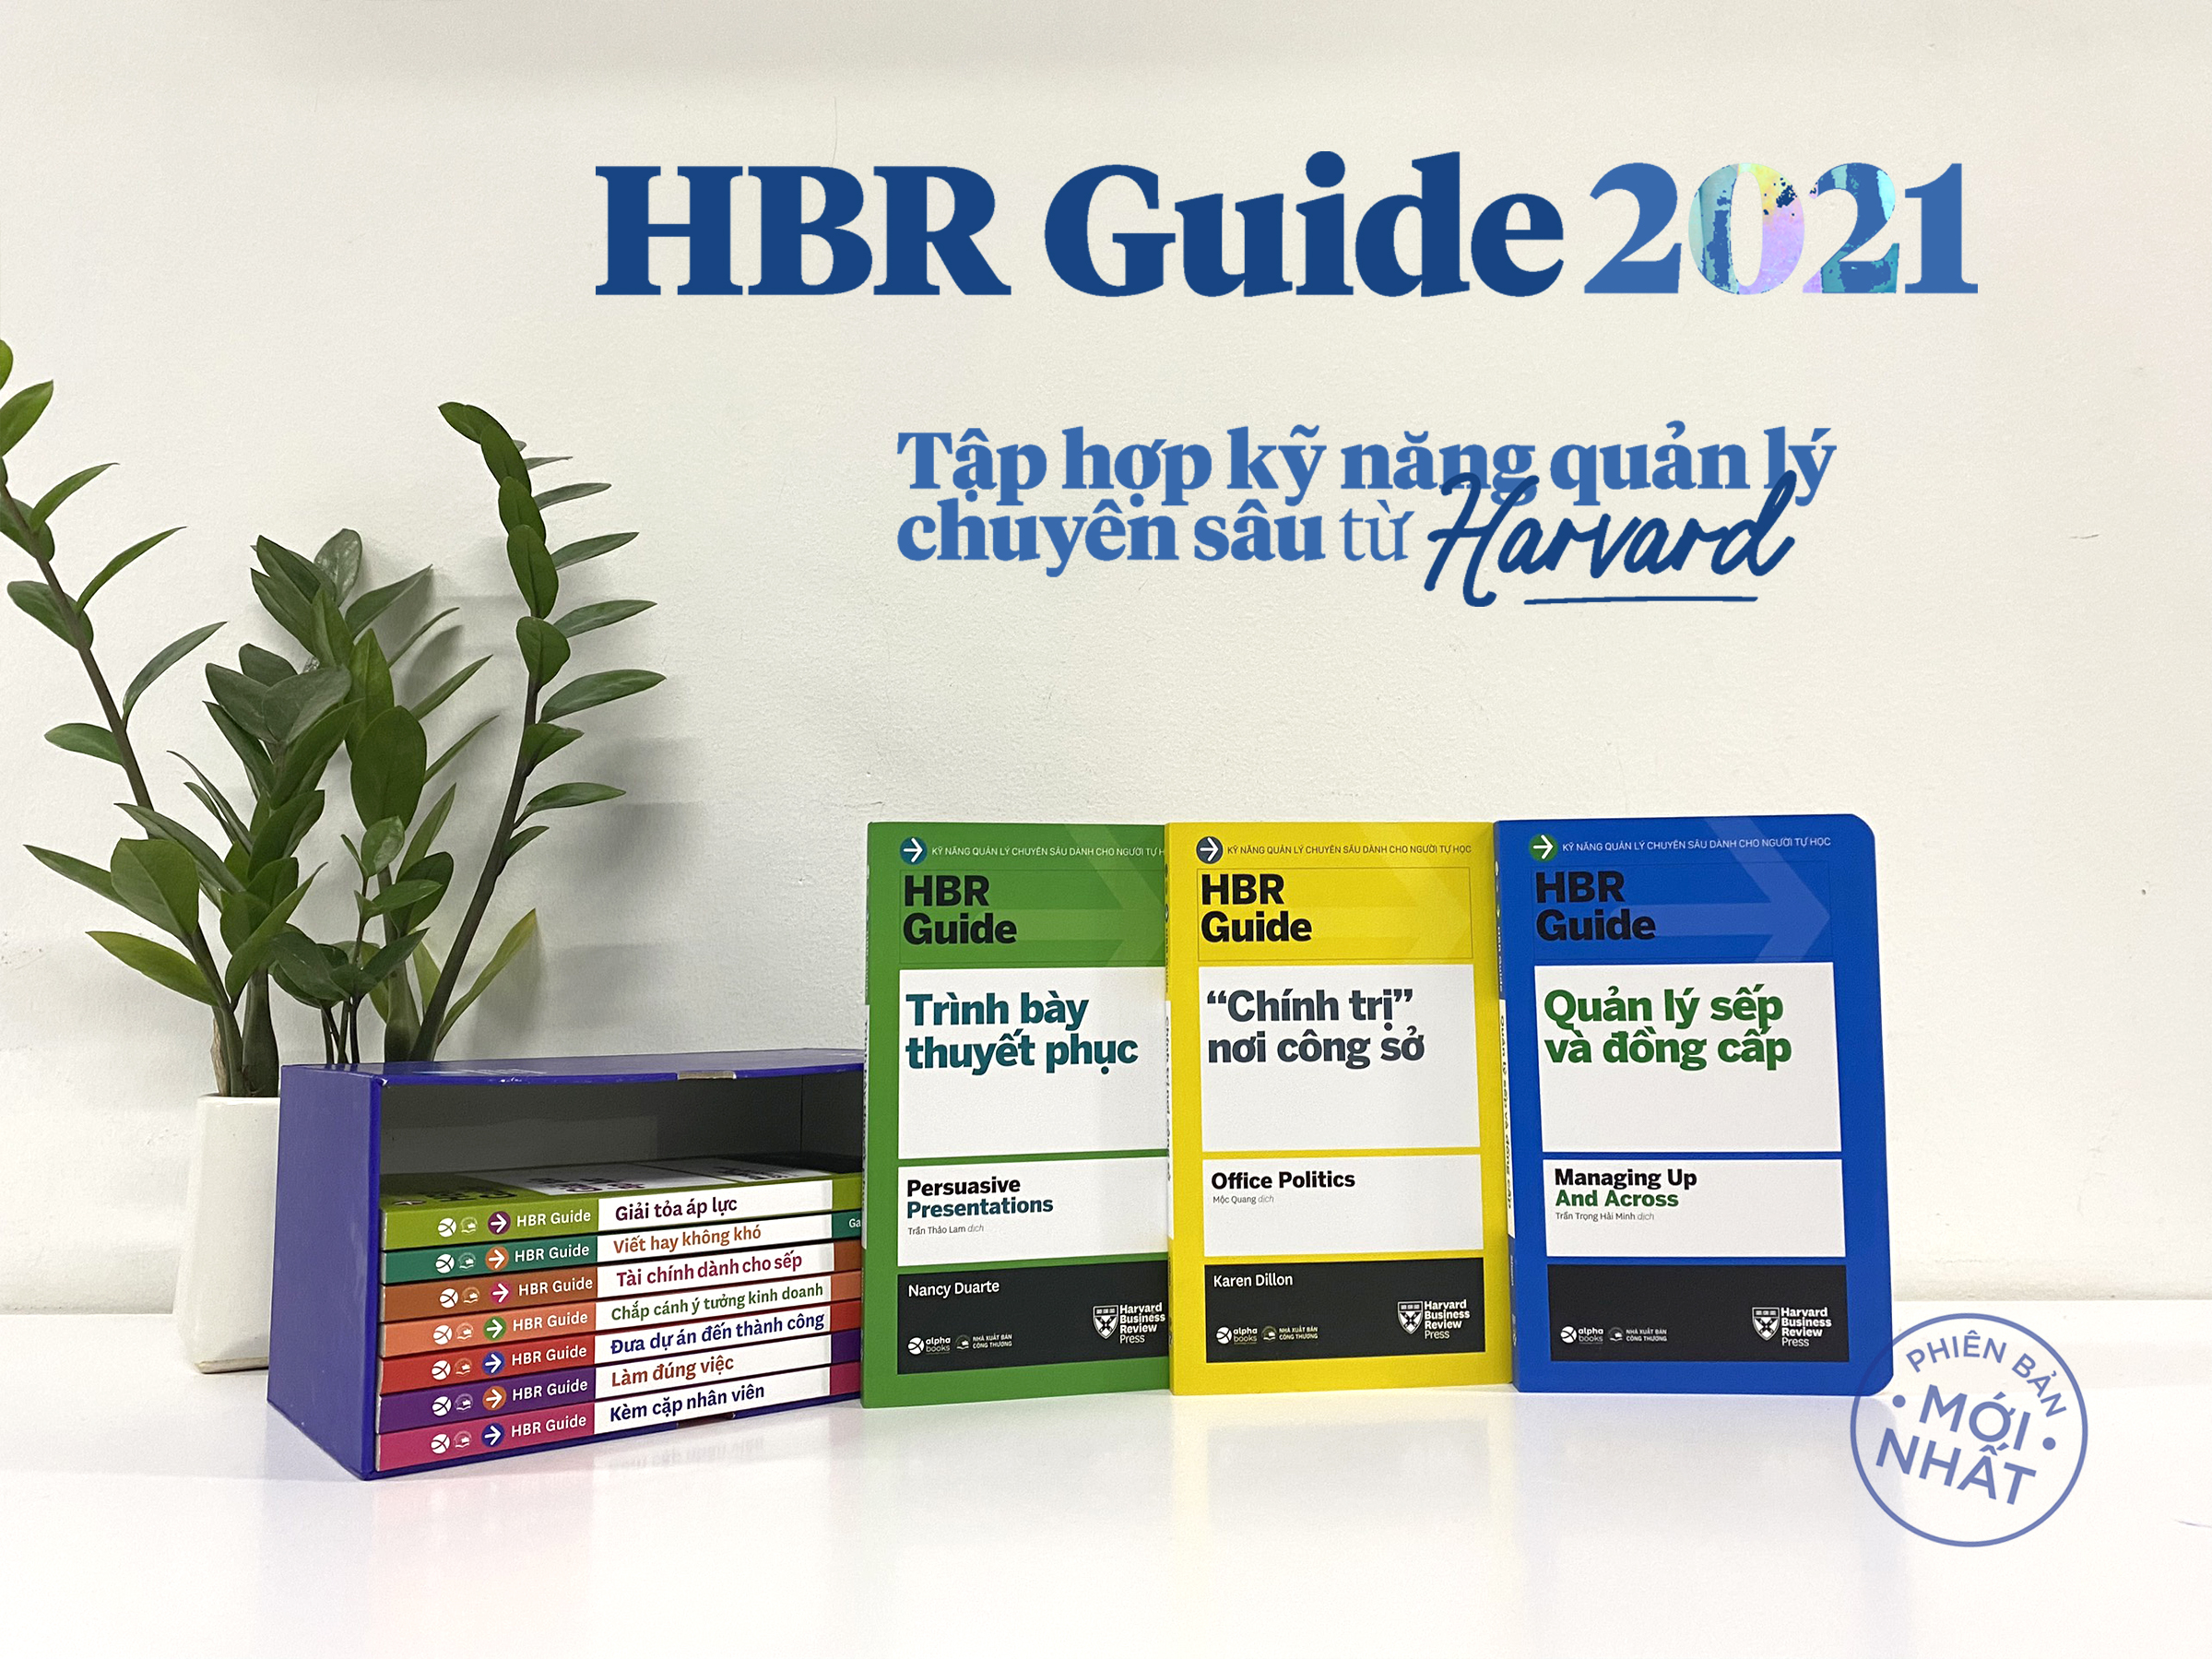 HBR Guide 2021: Kỹ Năng Quản Lý Chuyên Sâu Từ Harvard Business Review ( Bộ 10 cuốn + tặng kèm boxset)